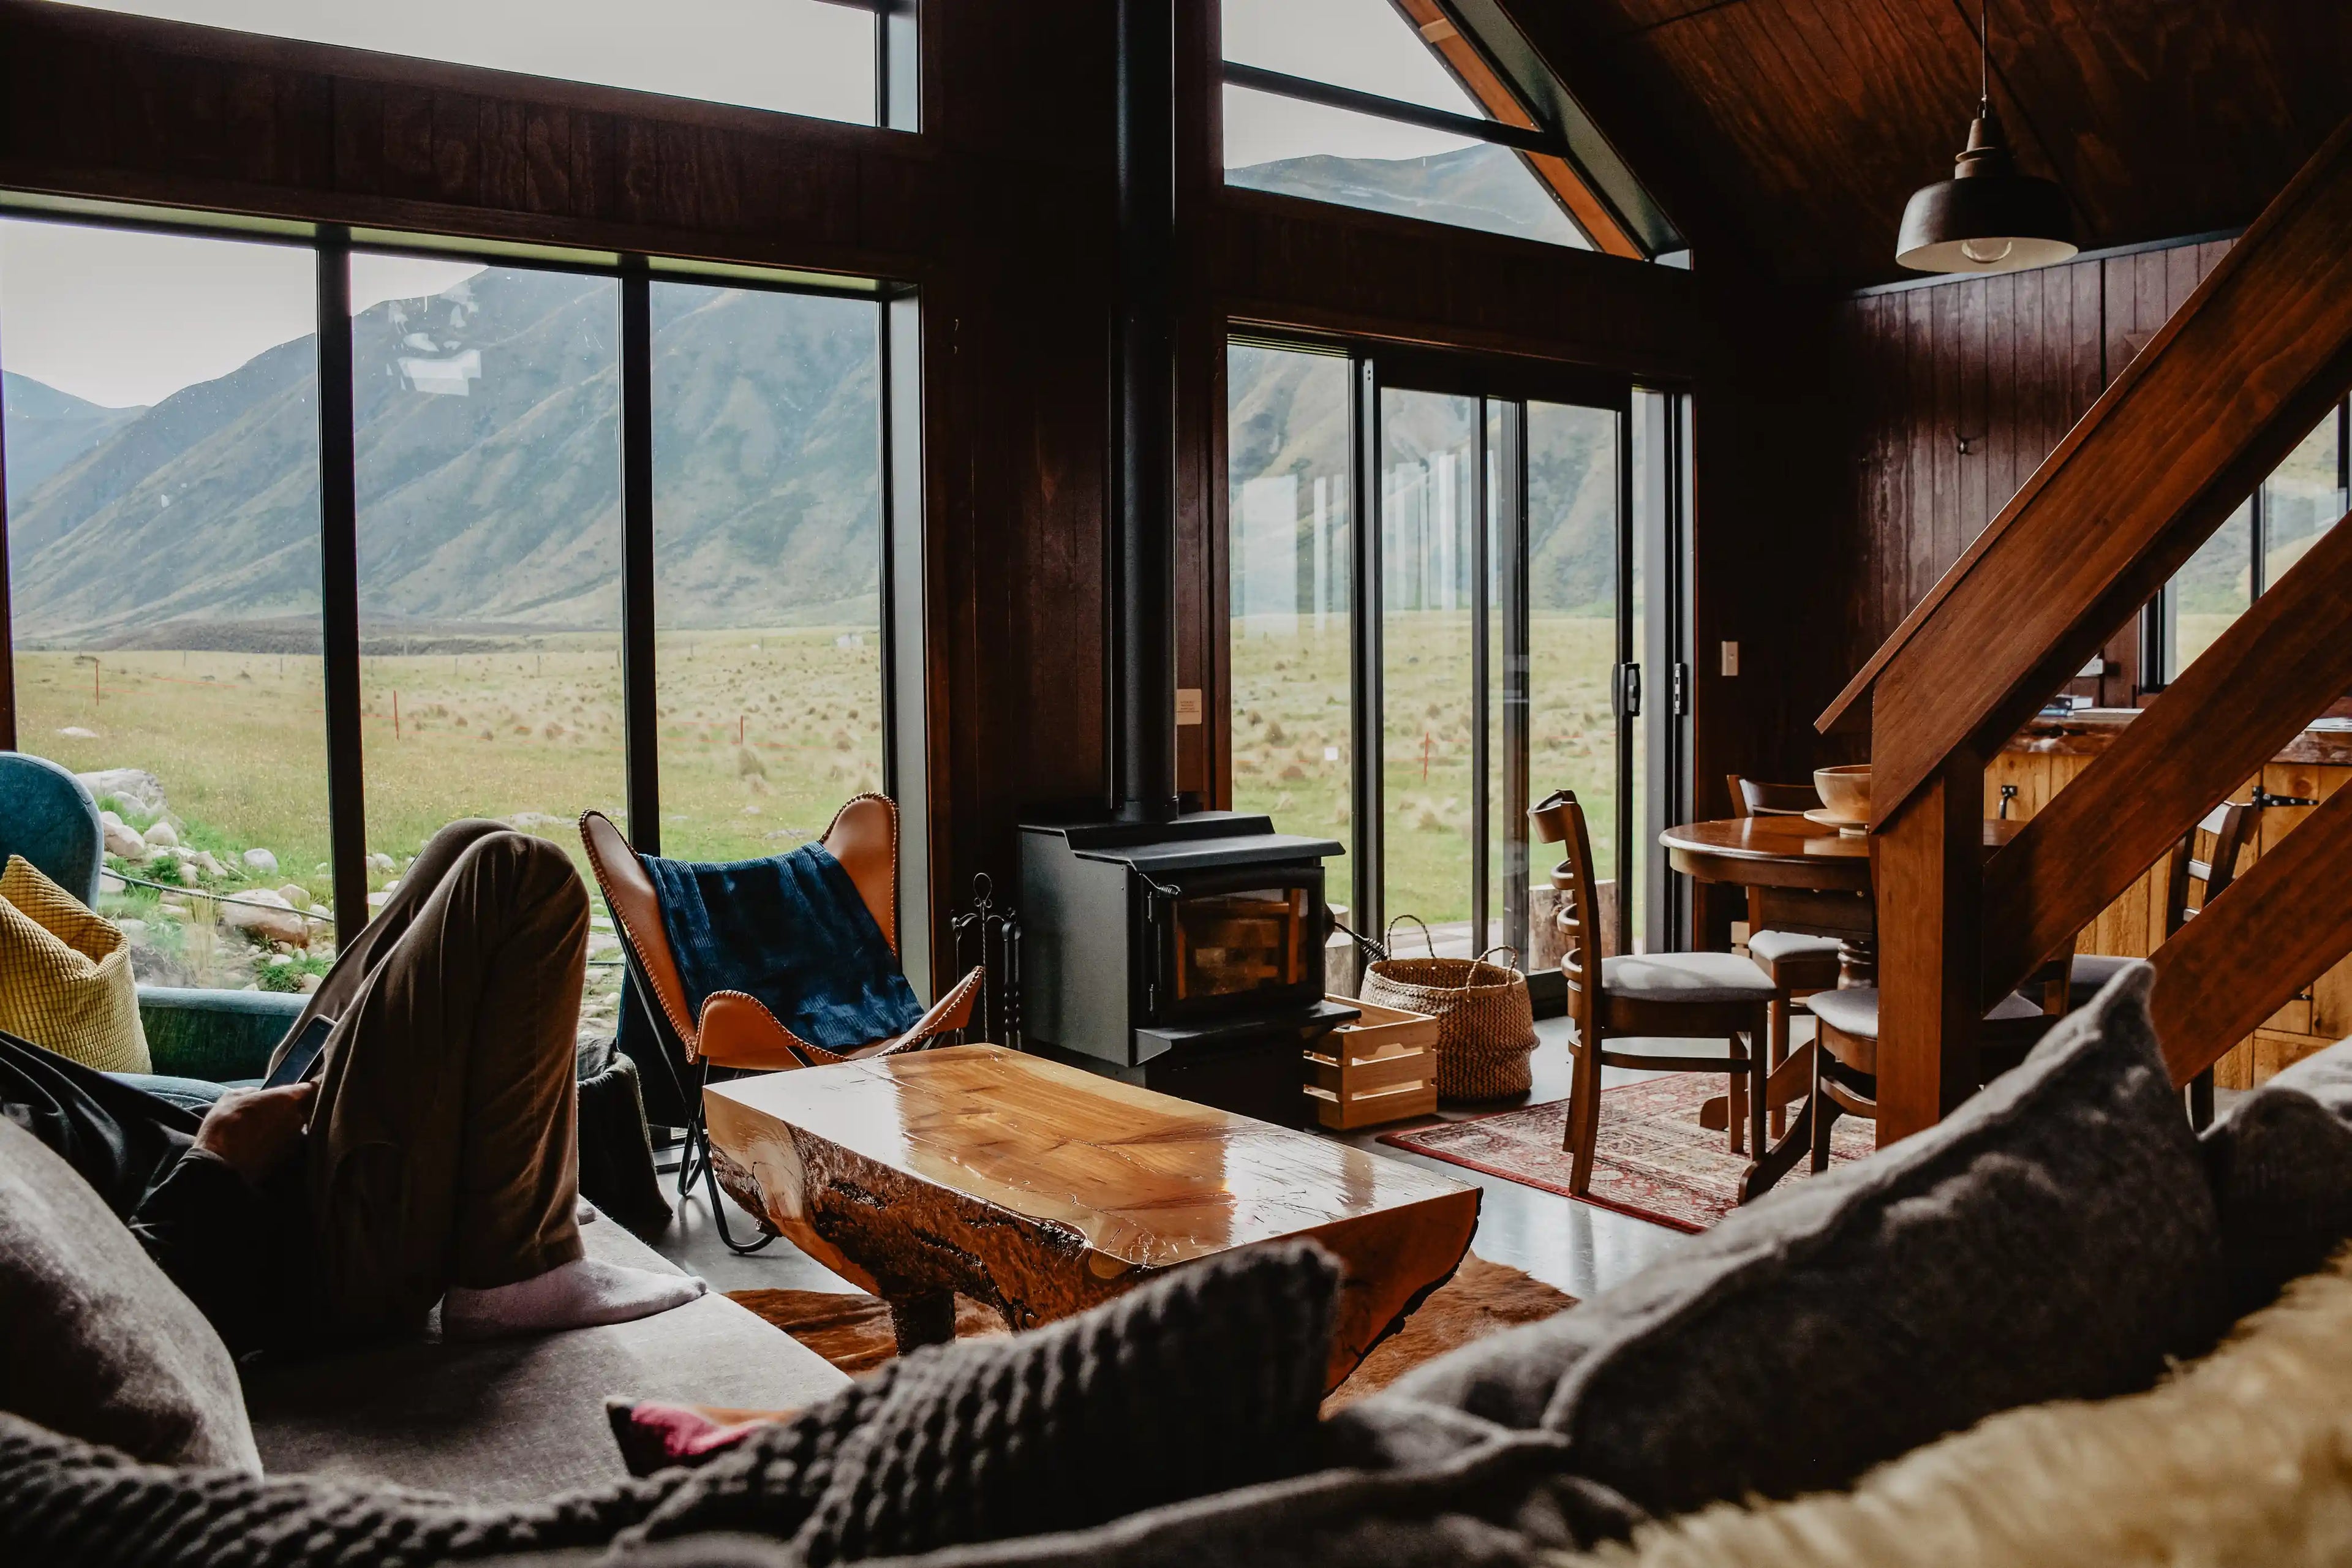 En mann sitter på en sofa i en hytte midt i naturen med en vakker utsikt.